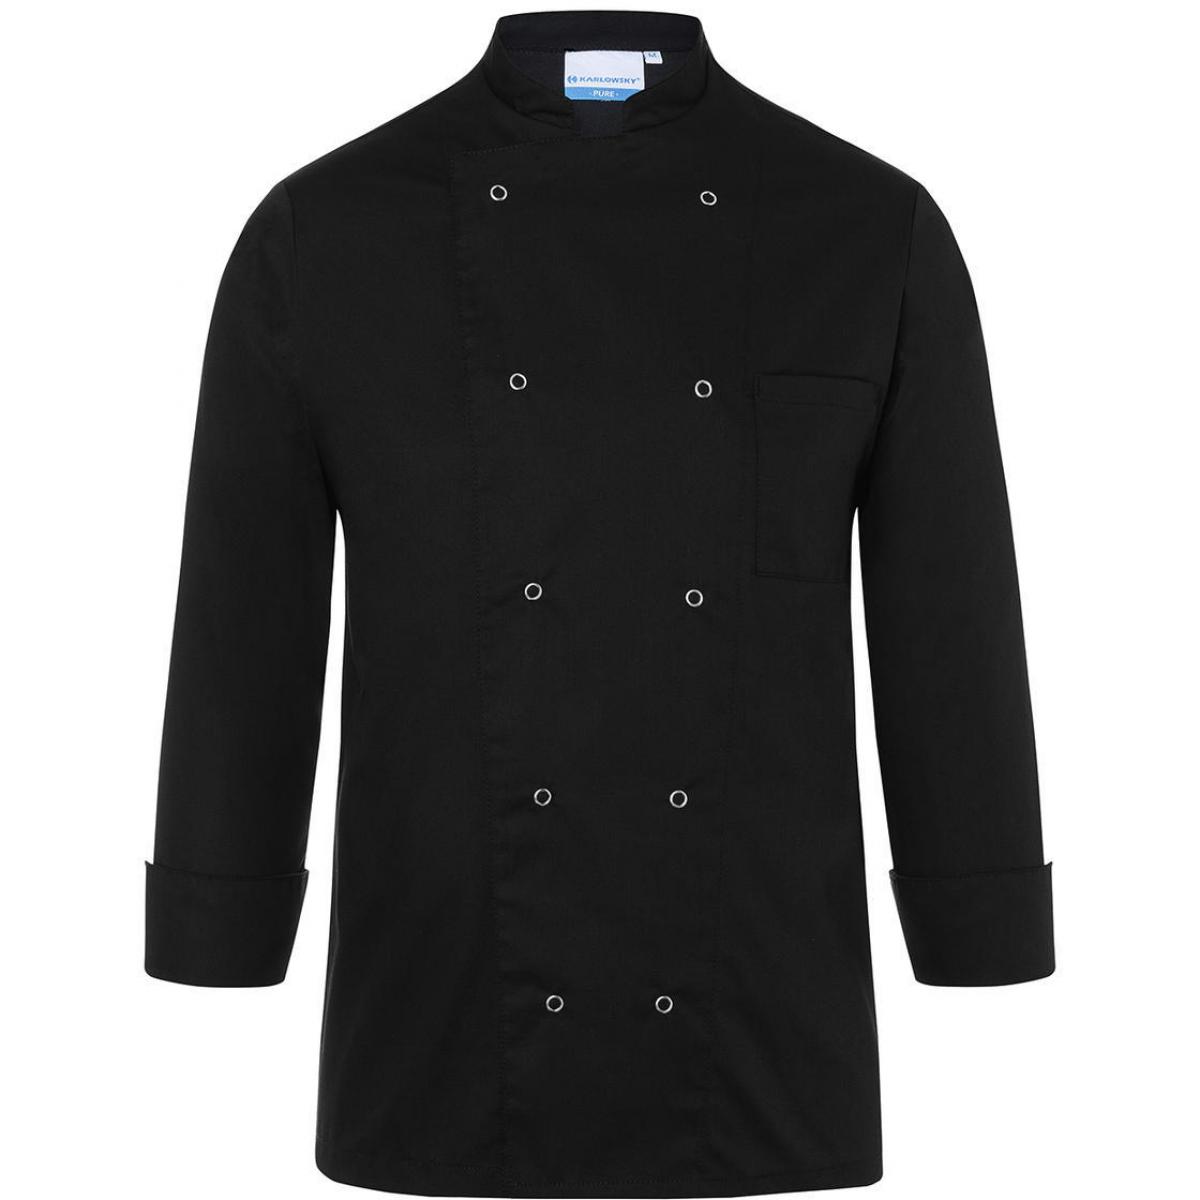 Hersteller: Karlowsky Herstellernummer: BJM 2 Artikelbezeichnung: Chef Jacket Basic Unisex Waschbar bis 60°C Farbe: Black